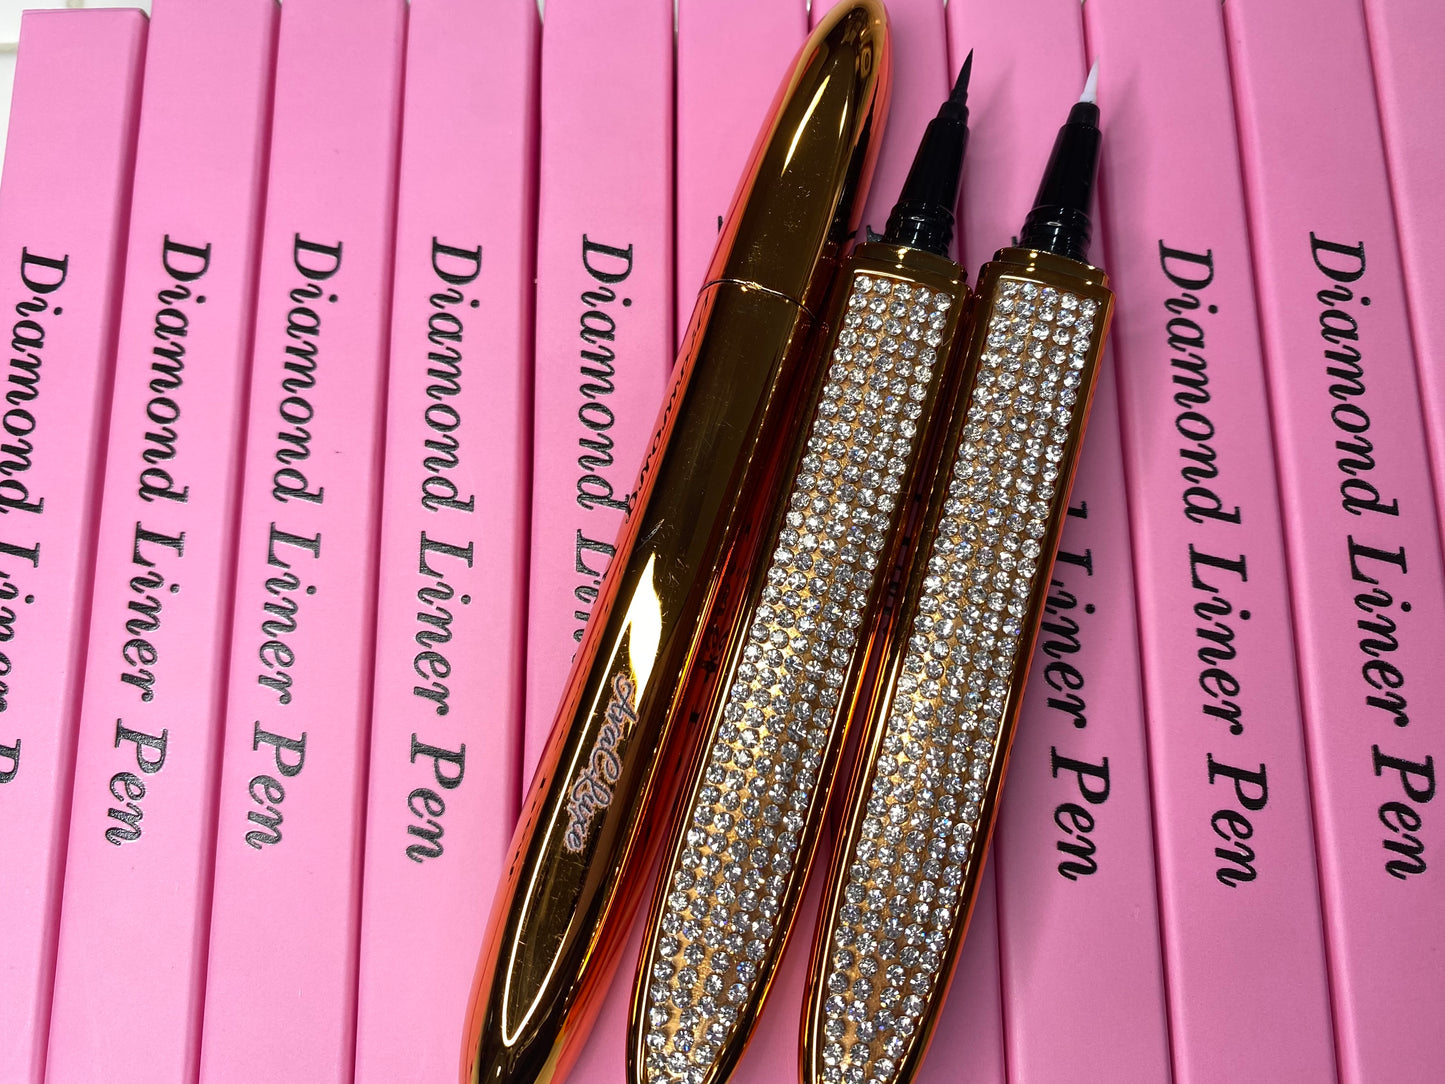 Diamond Liner Pen Wholesale (20 pens)